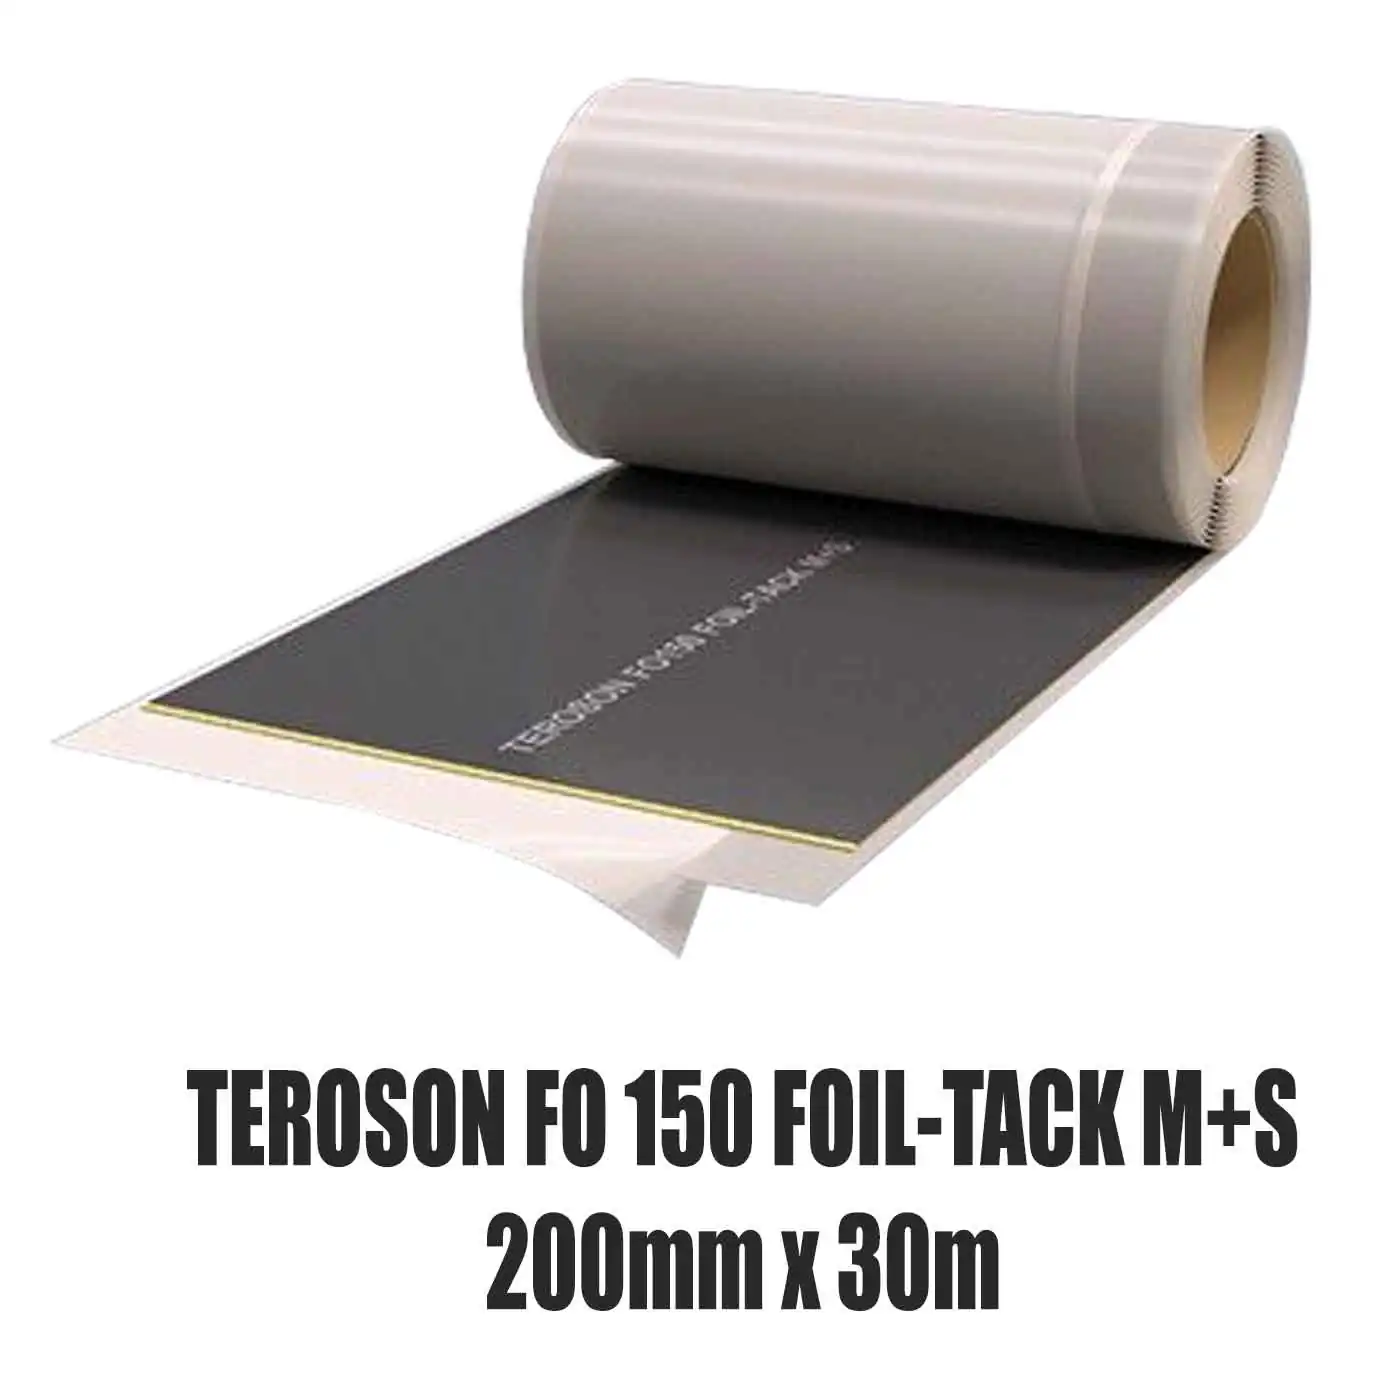 Dichtfolie TEROSON FO 150 FOIL-TACK M+S 200 mm x 30 m